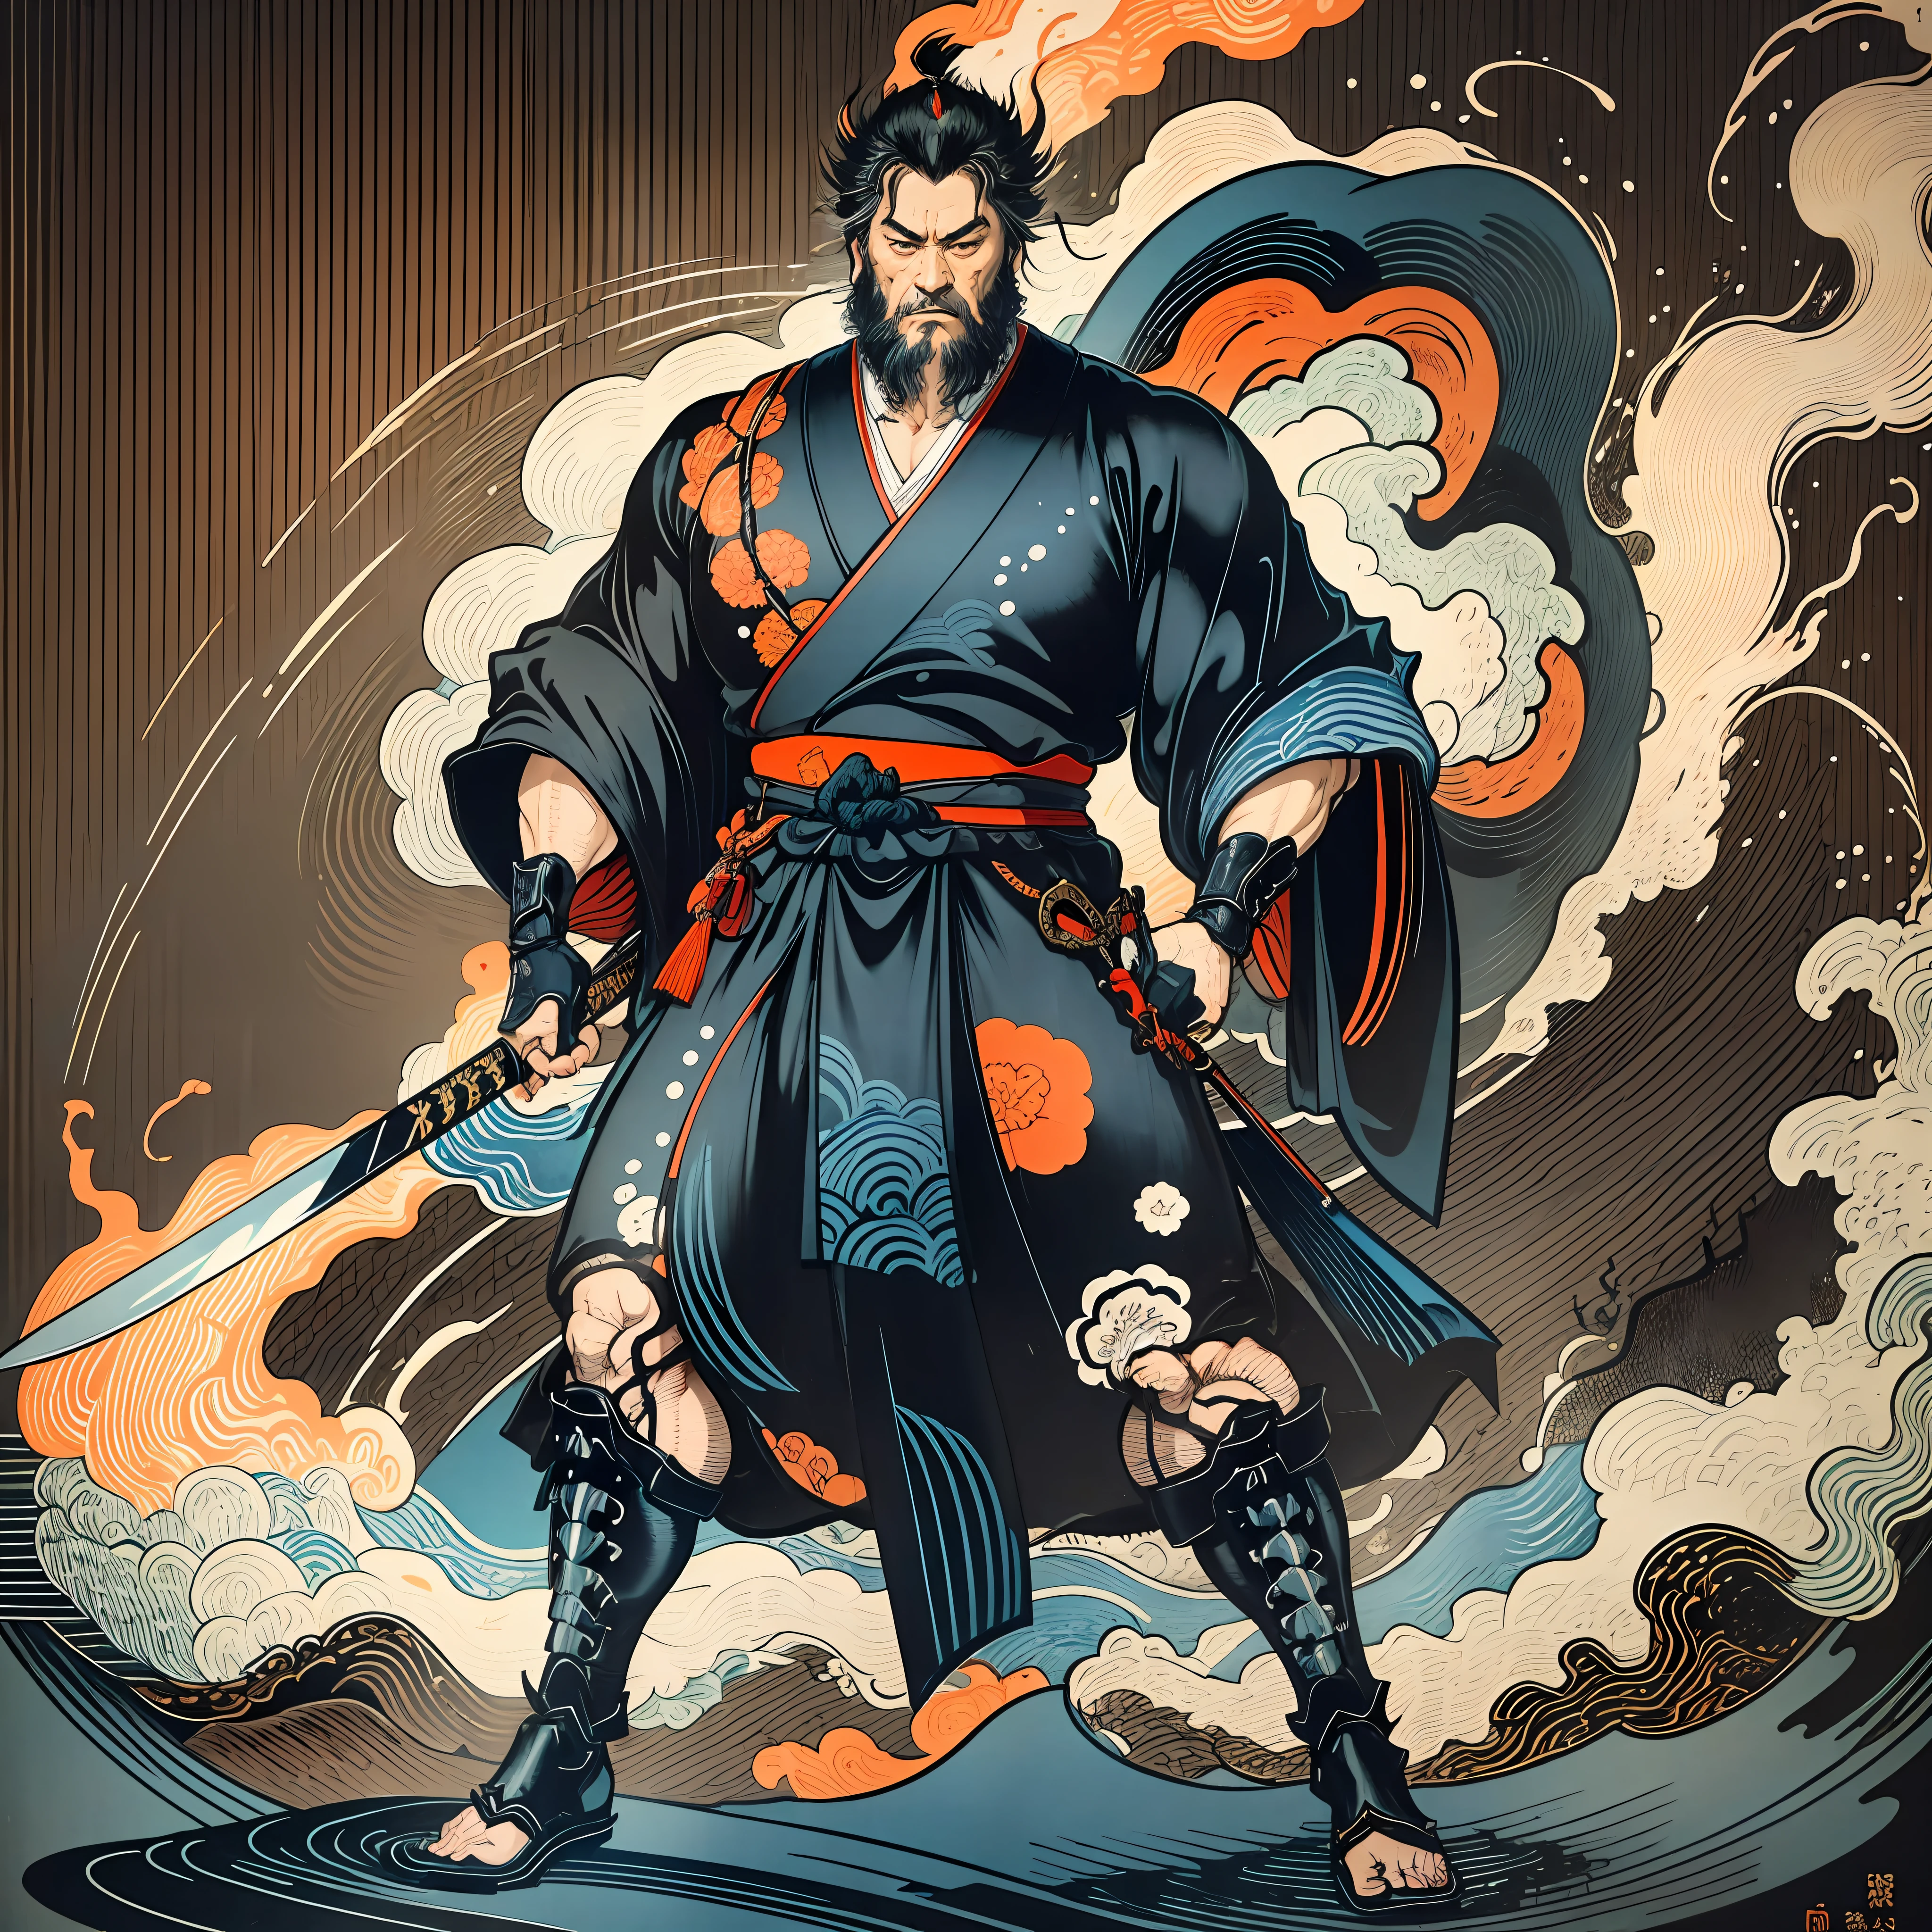 É uma pintura de corpo inteiro com cores naturais com desenhos de linhas no estilo Katsushika Hokusai.. O espadachim Miyamoto Musashi tem um corpo grande como um homem forte. Samurais do Japão. Ele tem uma expressão de determinação digna, mas viril, Cabelo preto curto, e um curto, barba aparada. A parte superior de seu corpo está coberta por um quimono preto e seu hakama vai até os joelhos.. Na mão direita ele segura uma espada japonesa. na mais alta qualidade, no relâmpago de alta resolução do estilo ukiyo-e e nas chamas rodopiantes da obra-prima. Miyamoto Musashi fica com o rosto e o corpo voltados para frente, suas costas retas.